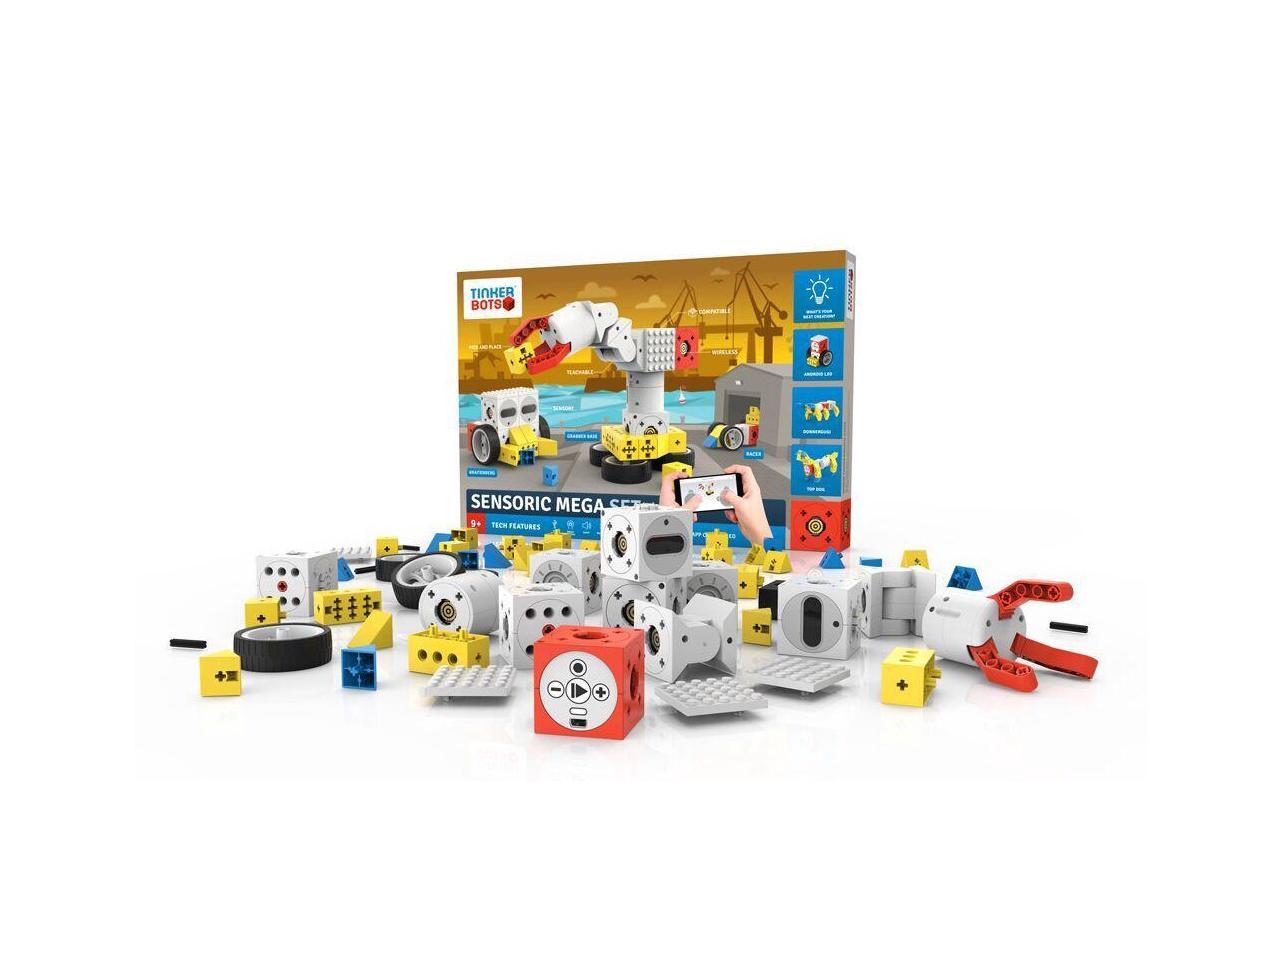 Tinkerbots Tinker Bots Robots Robotic Toy Starter Set Building Kit for sale online 